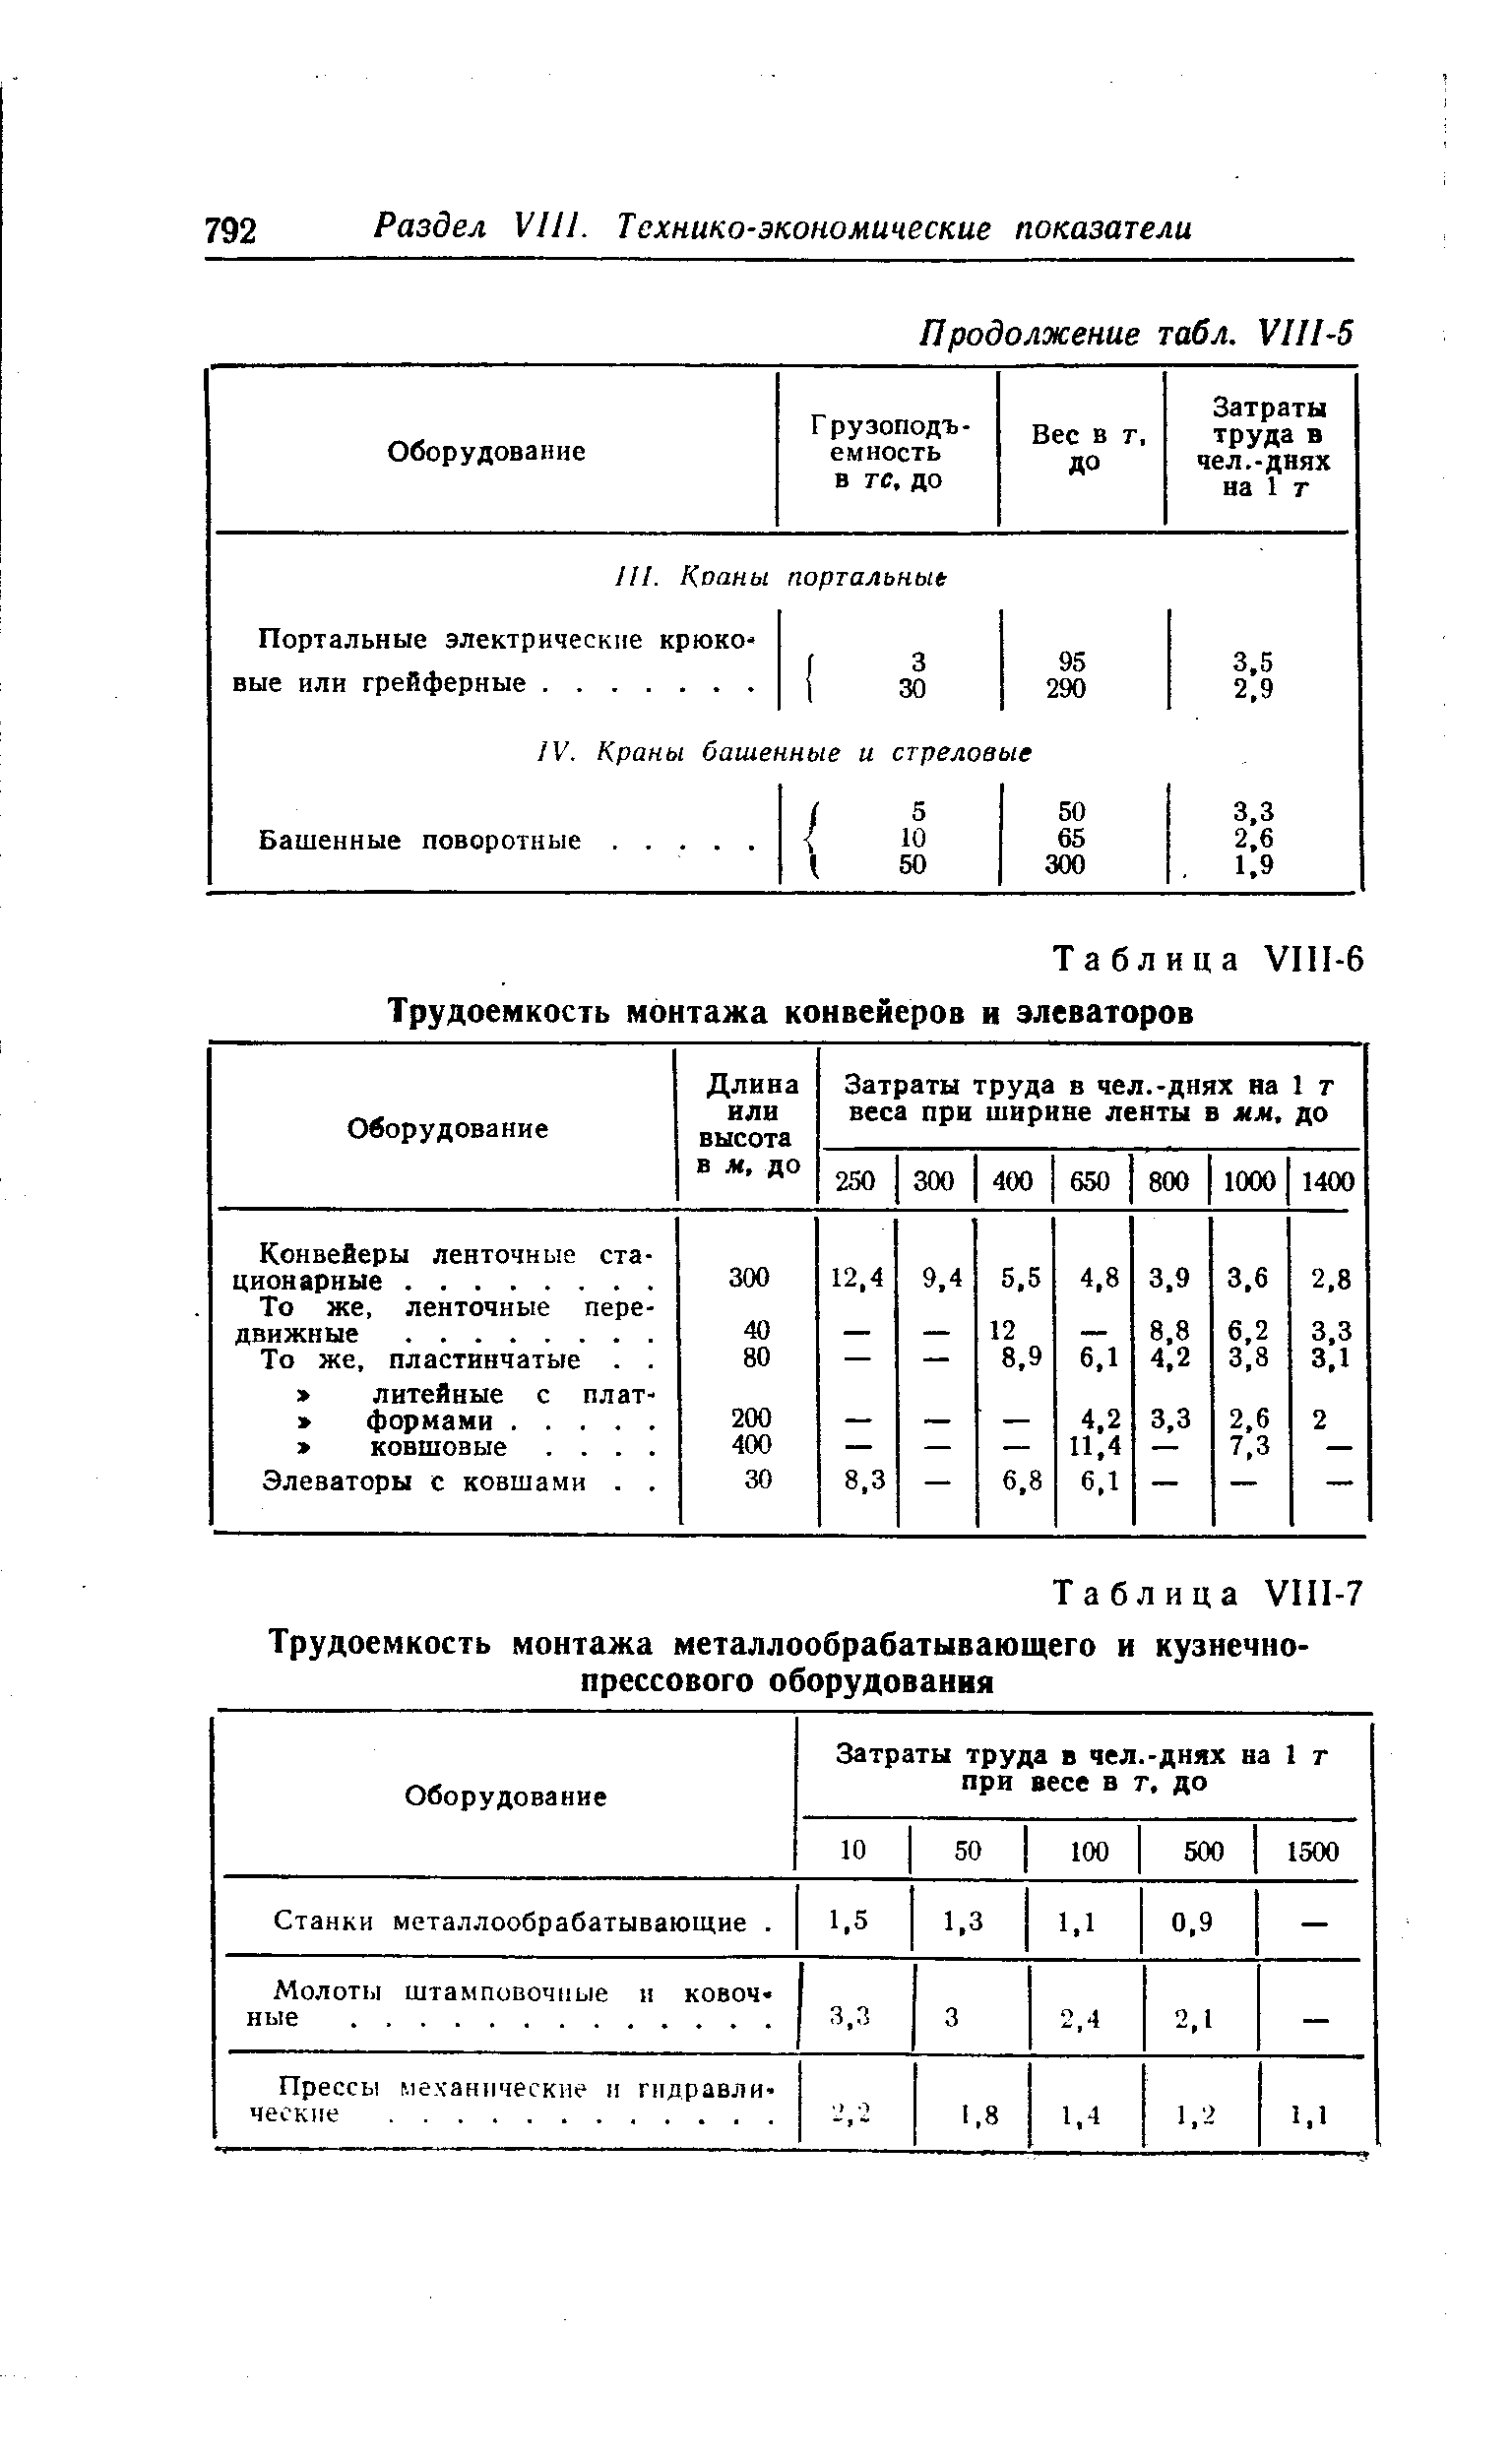 Таблица У1П-6 Трудоемкость монтажа конвейеров и элеваторов
